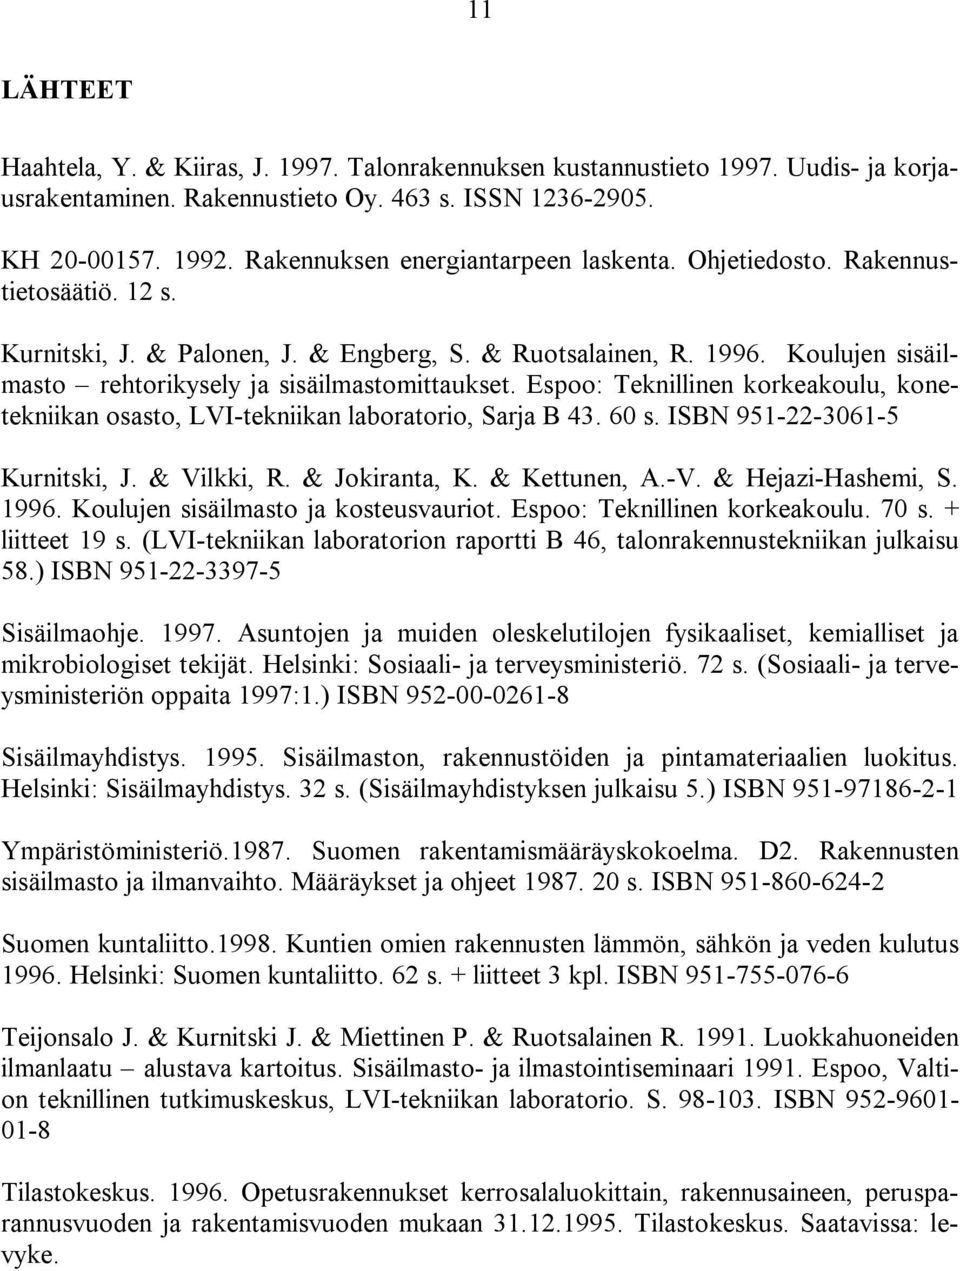 Koulujen sisäilmasto rehtorikysely ja sisäilmastomittaukset. Espoo: Teknillinen korkeakoulu, konetekniikan osasto, LVI-tekniikan laboratorio, Sarja B 43. 60 s. ISBN 951-22-3061-5 Kurnitski, J.